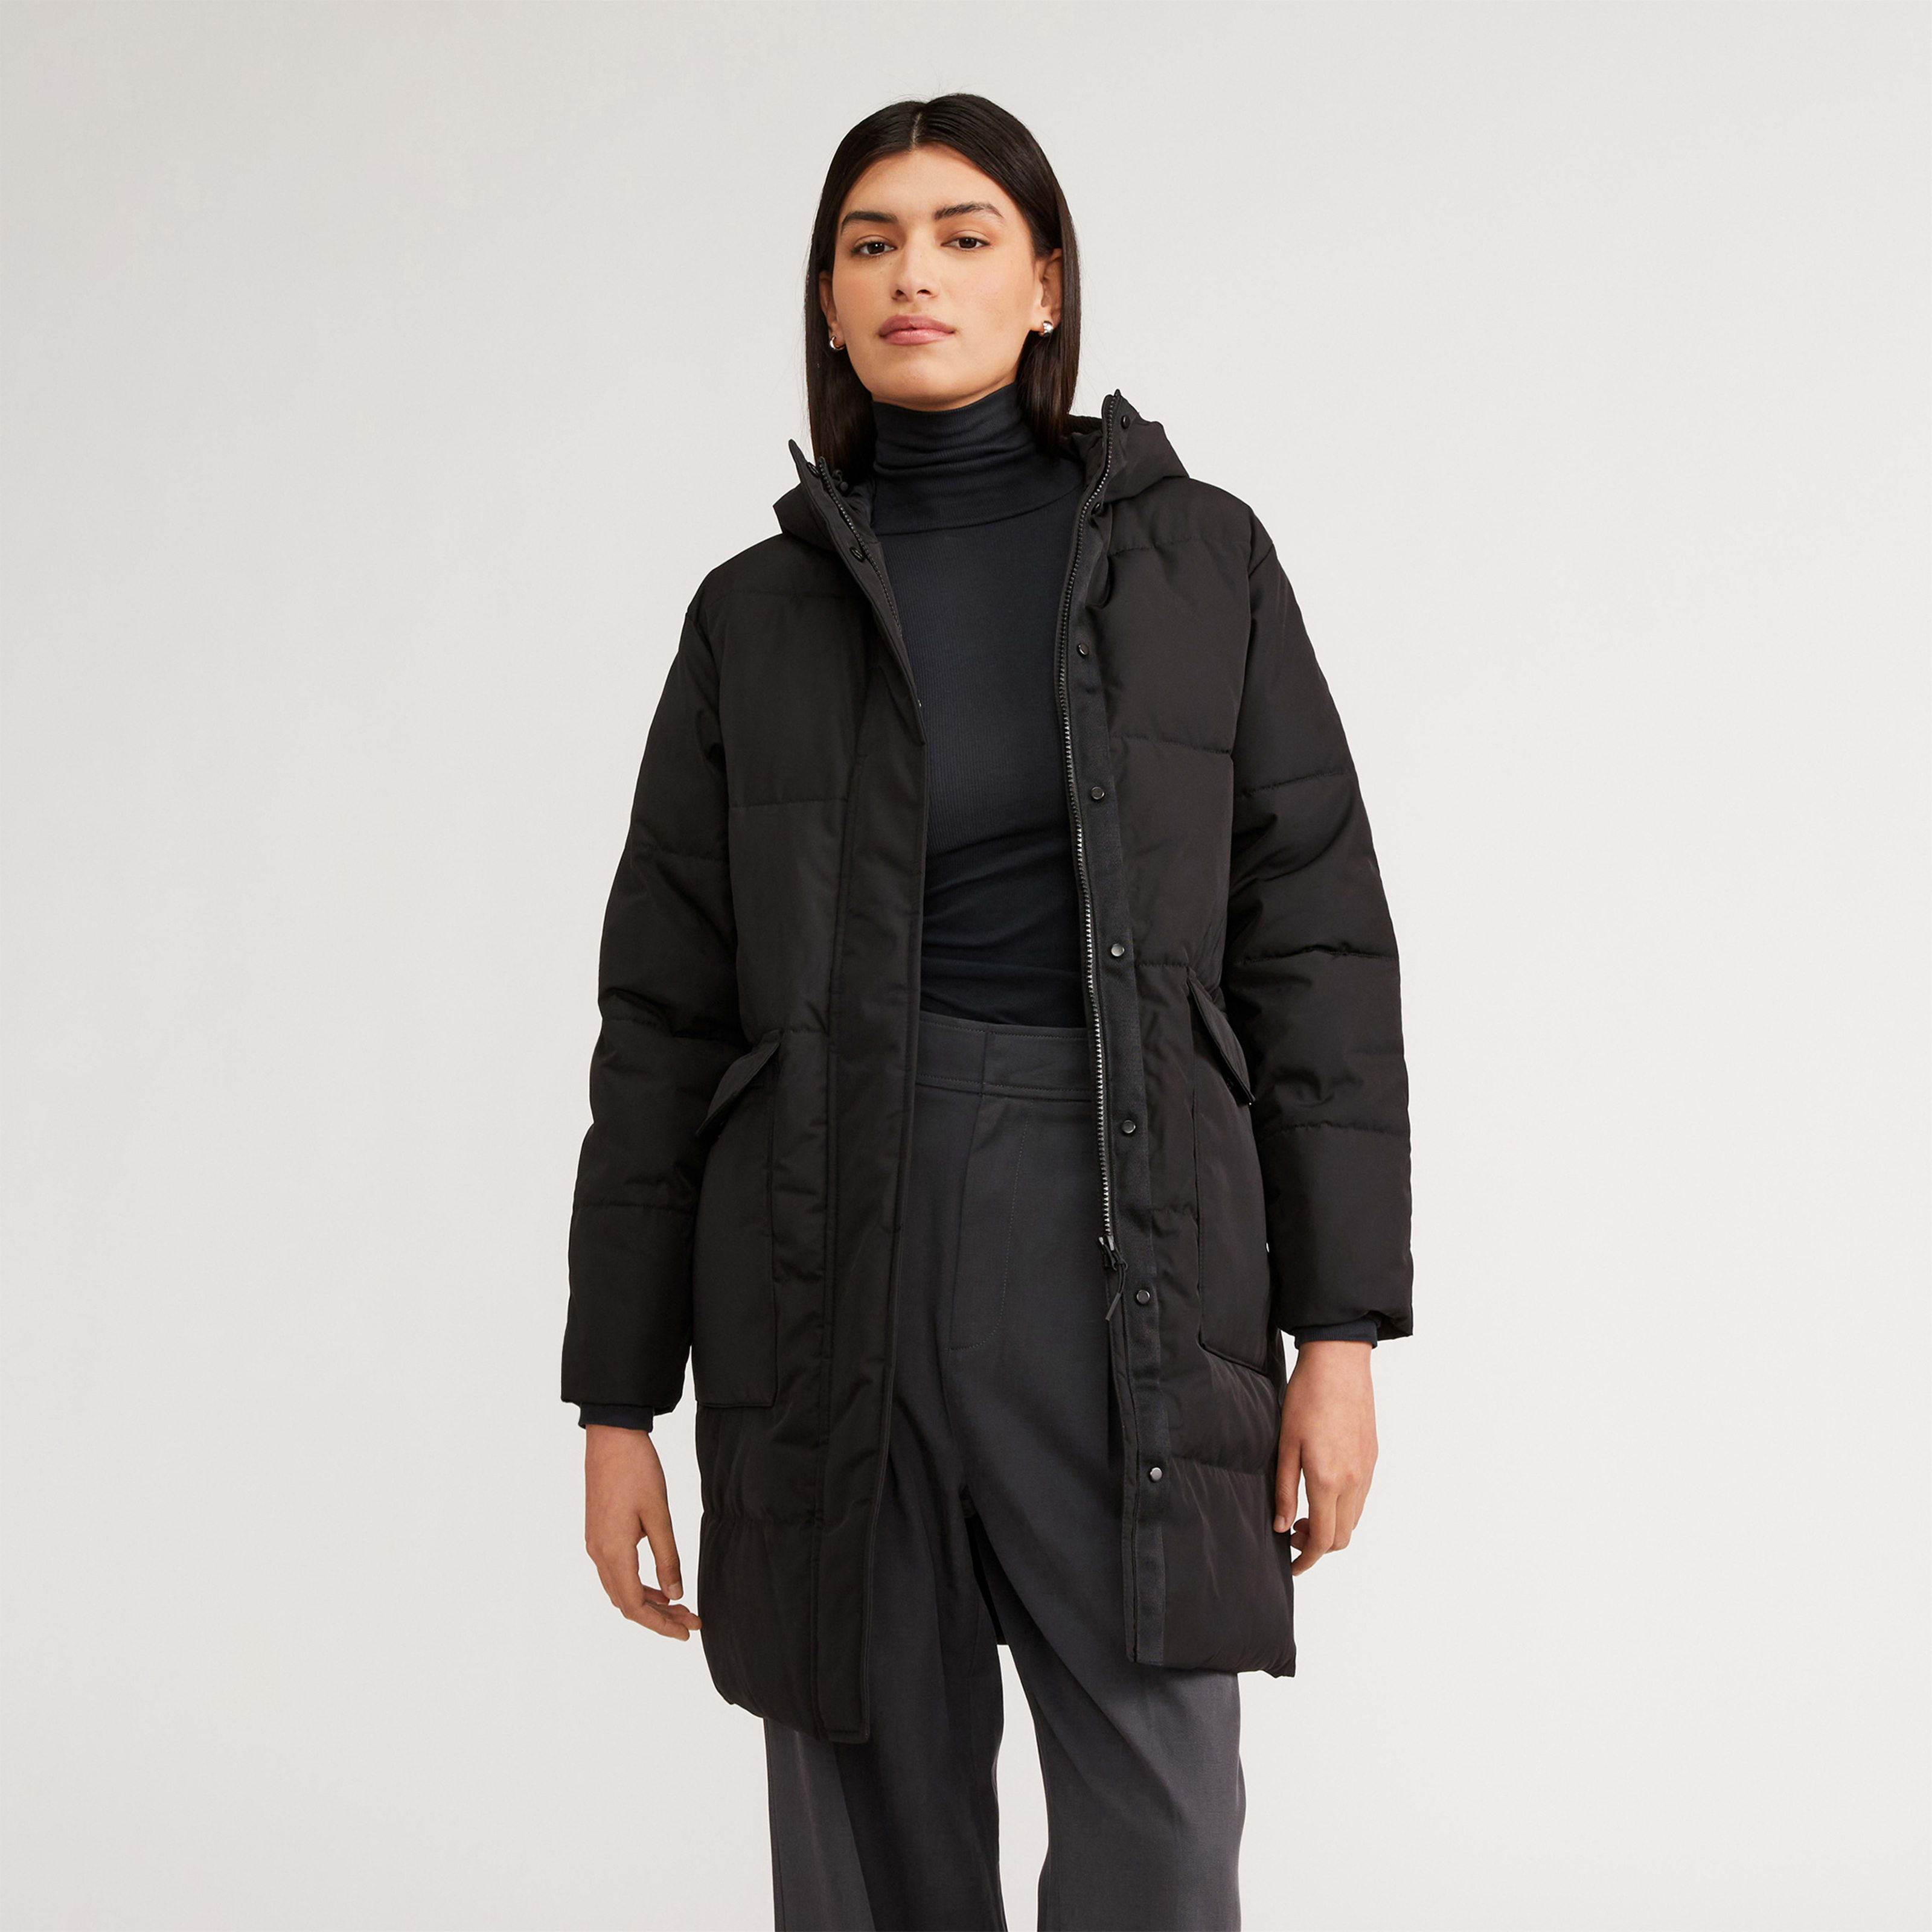 women's renew long puffer coat by everlane in black, size xxs